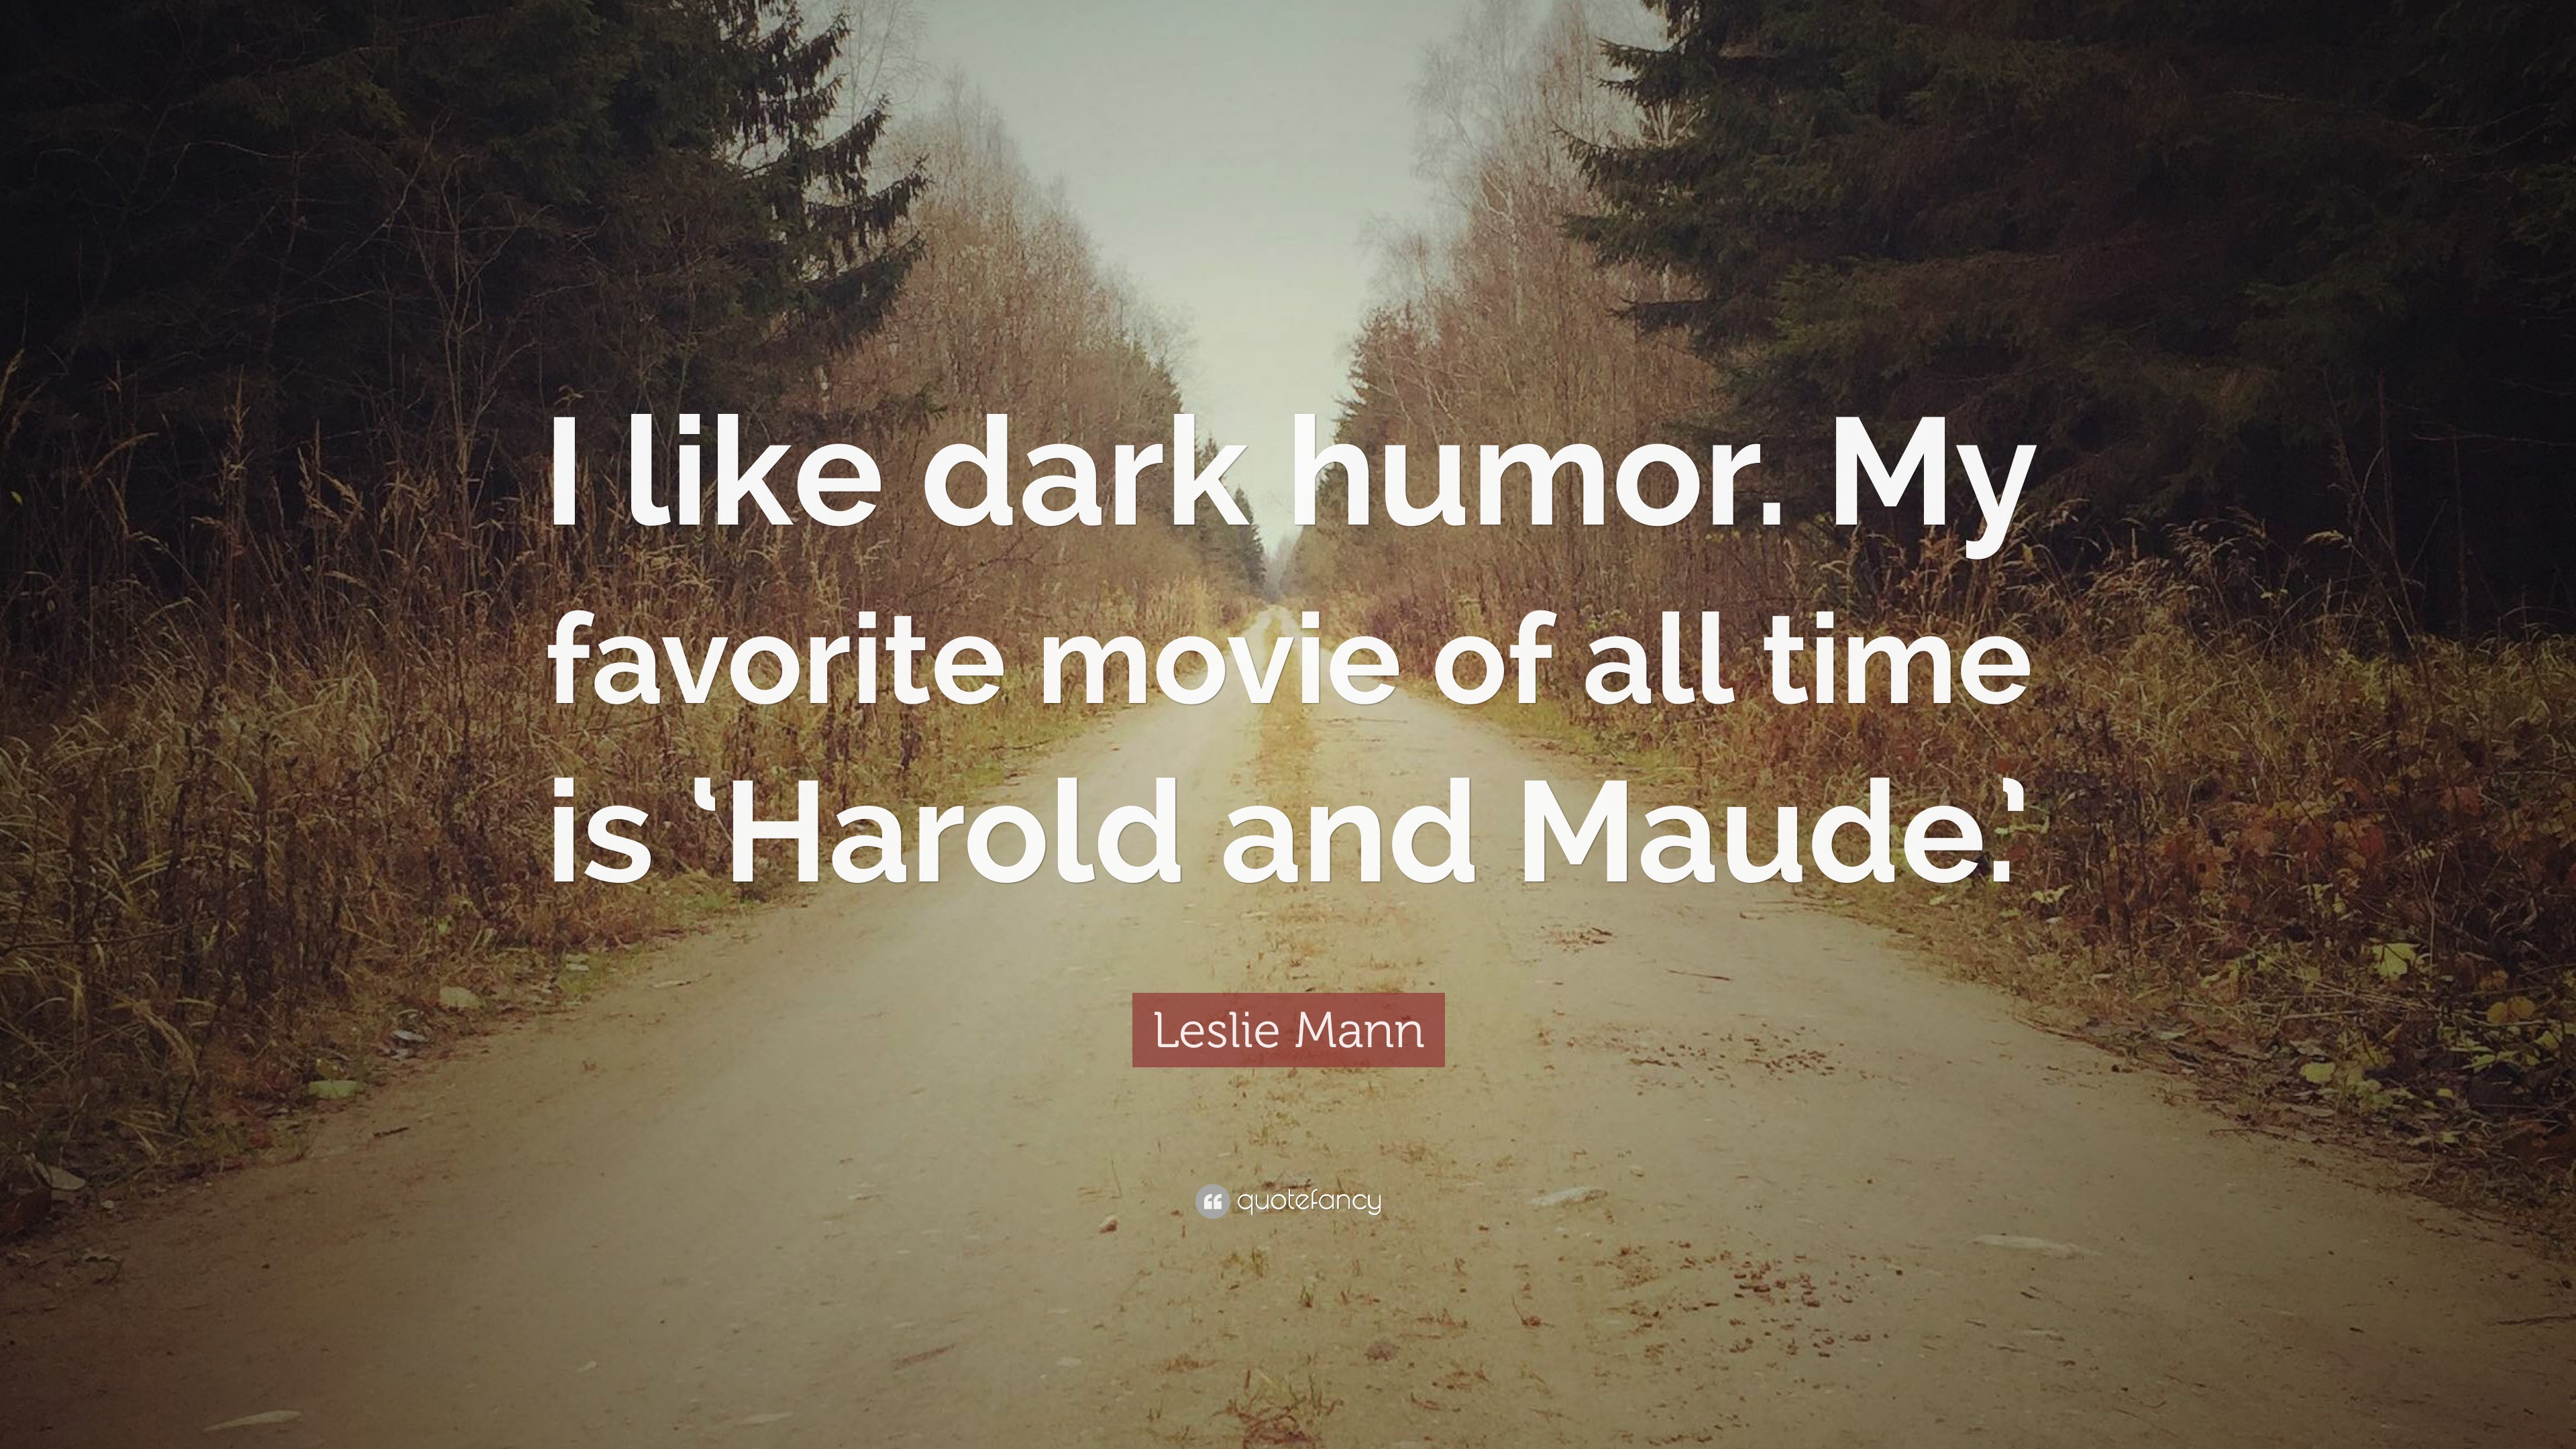 Leslie Mann Quote: “I like dark humor